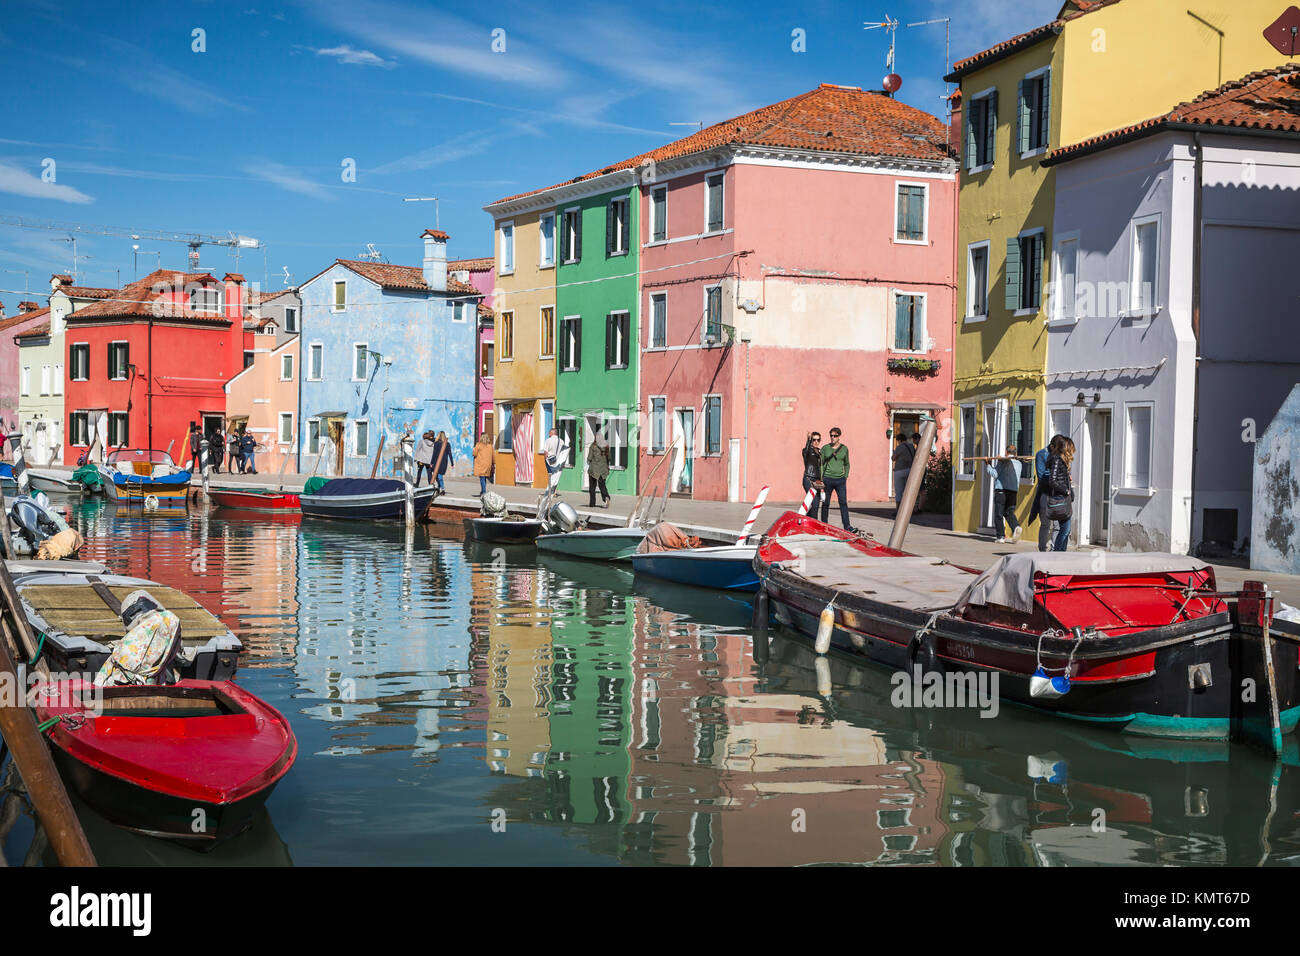 Die farbenfrohen Gebäude, Kanäle und Boote in der Venezianischen vlllage Burano, Venedig, Italien, Europa. Stockfoto